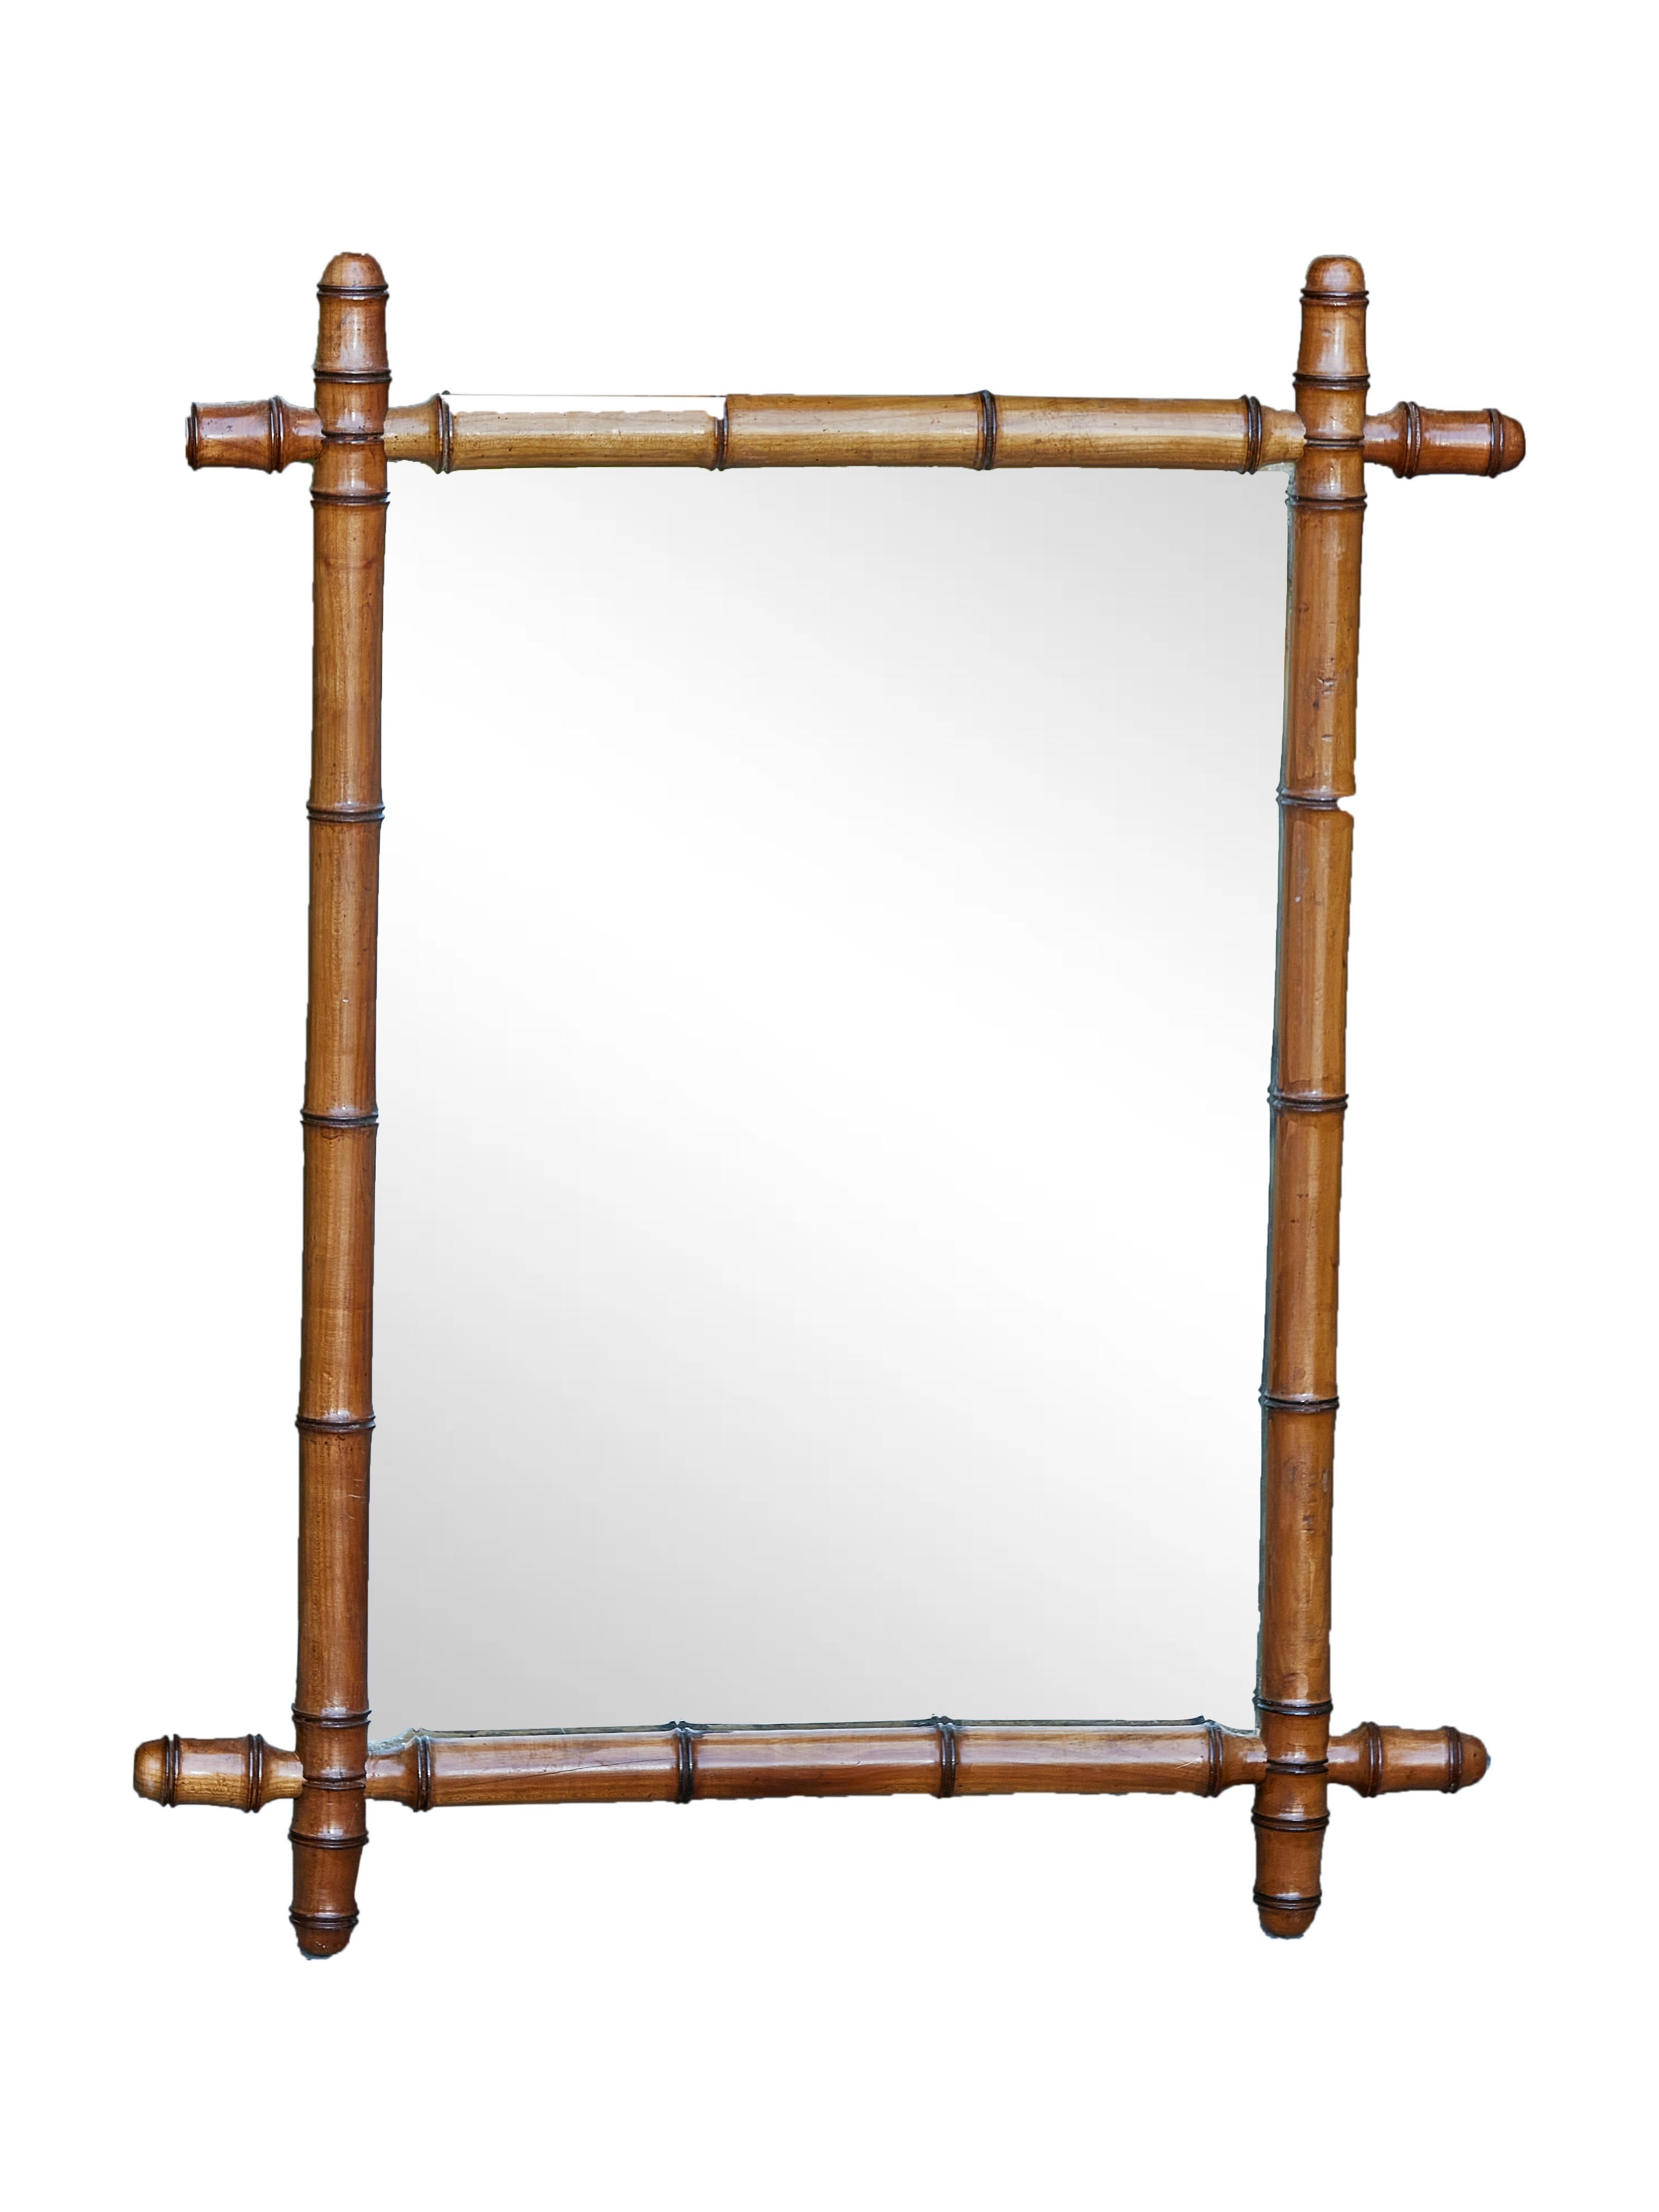 Ein kleiner französischer Spiegel aus Nussbaumholz mit Bambusimitat aus den 1920er Jahren, mit sich überschneidenden Ecken, geriffelten Akzenten und rustikalem Charakter. Dieser zierliche Spiegel aus französischem Bambusimitat aus den 1920er-Jahren